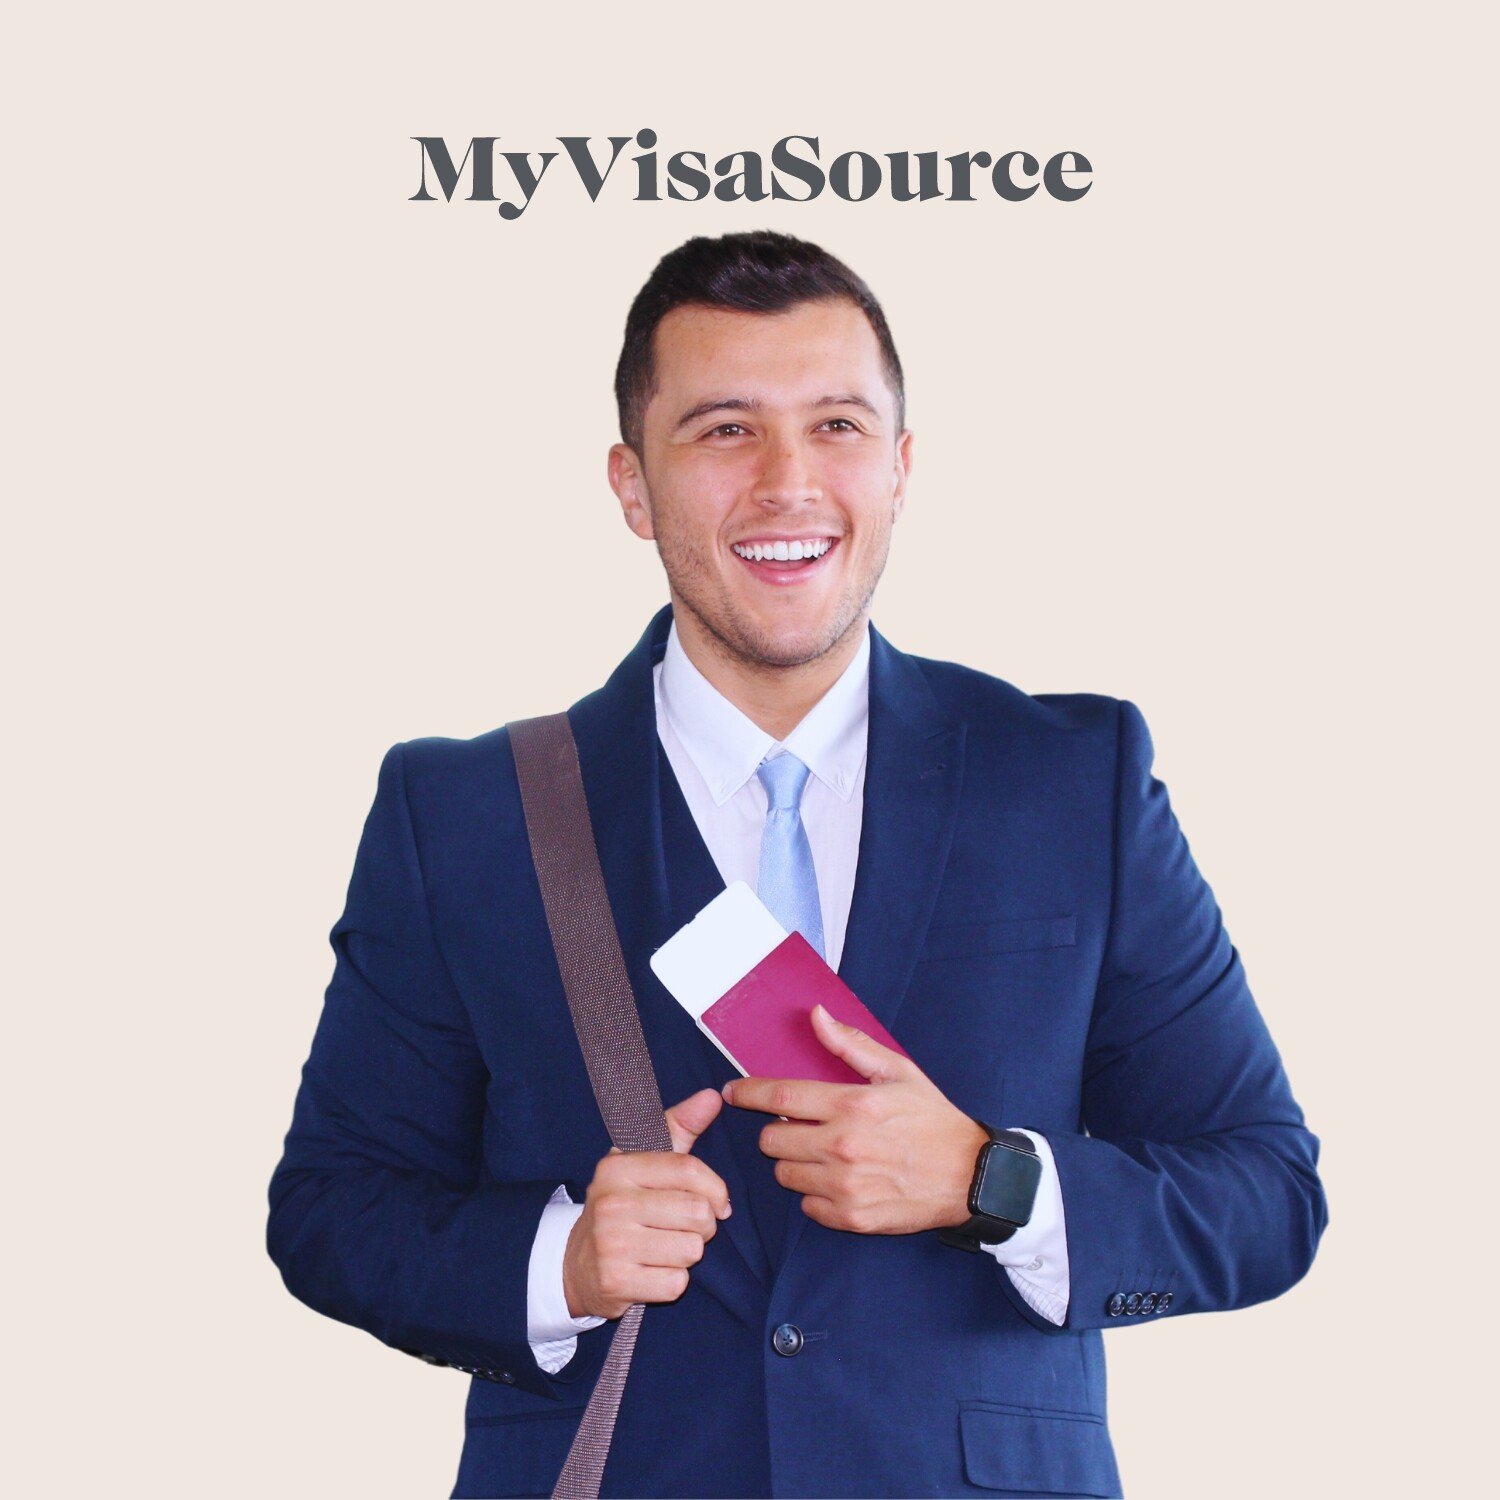 man holding a passport